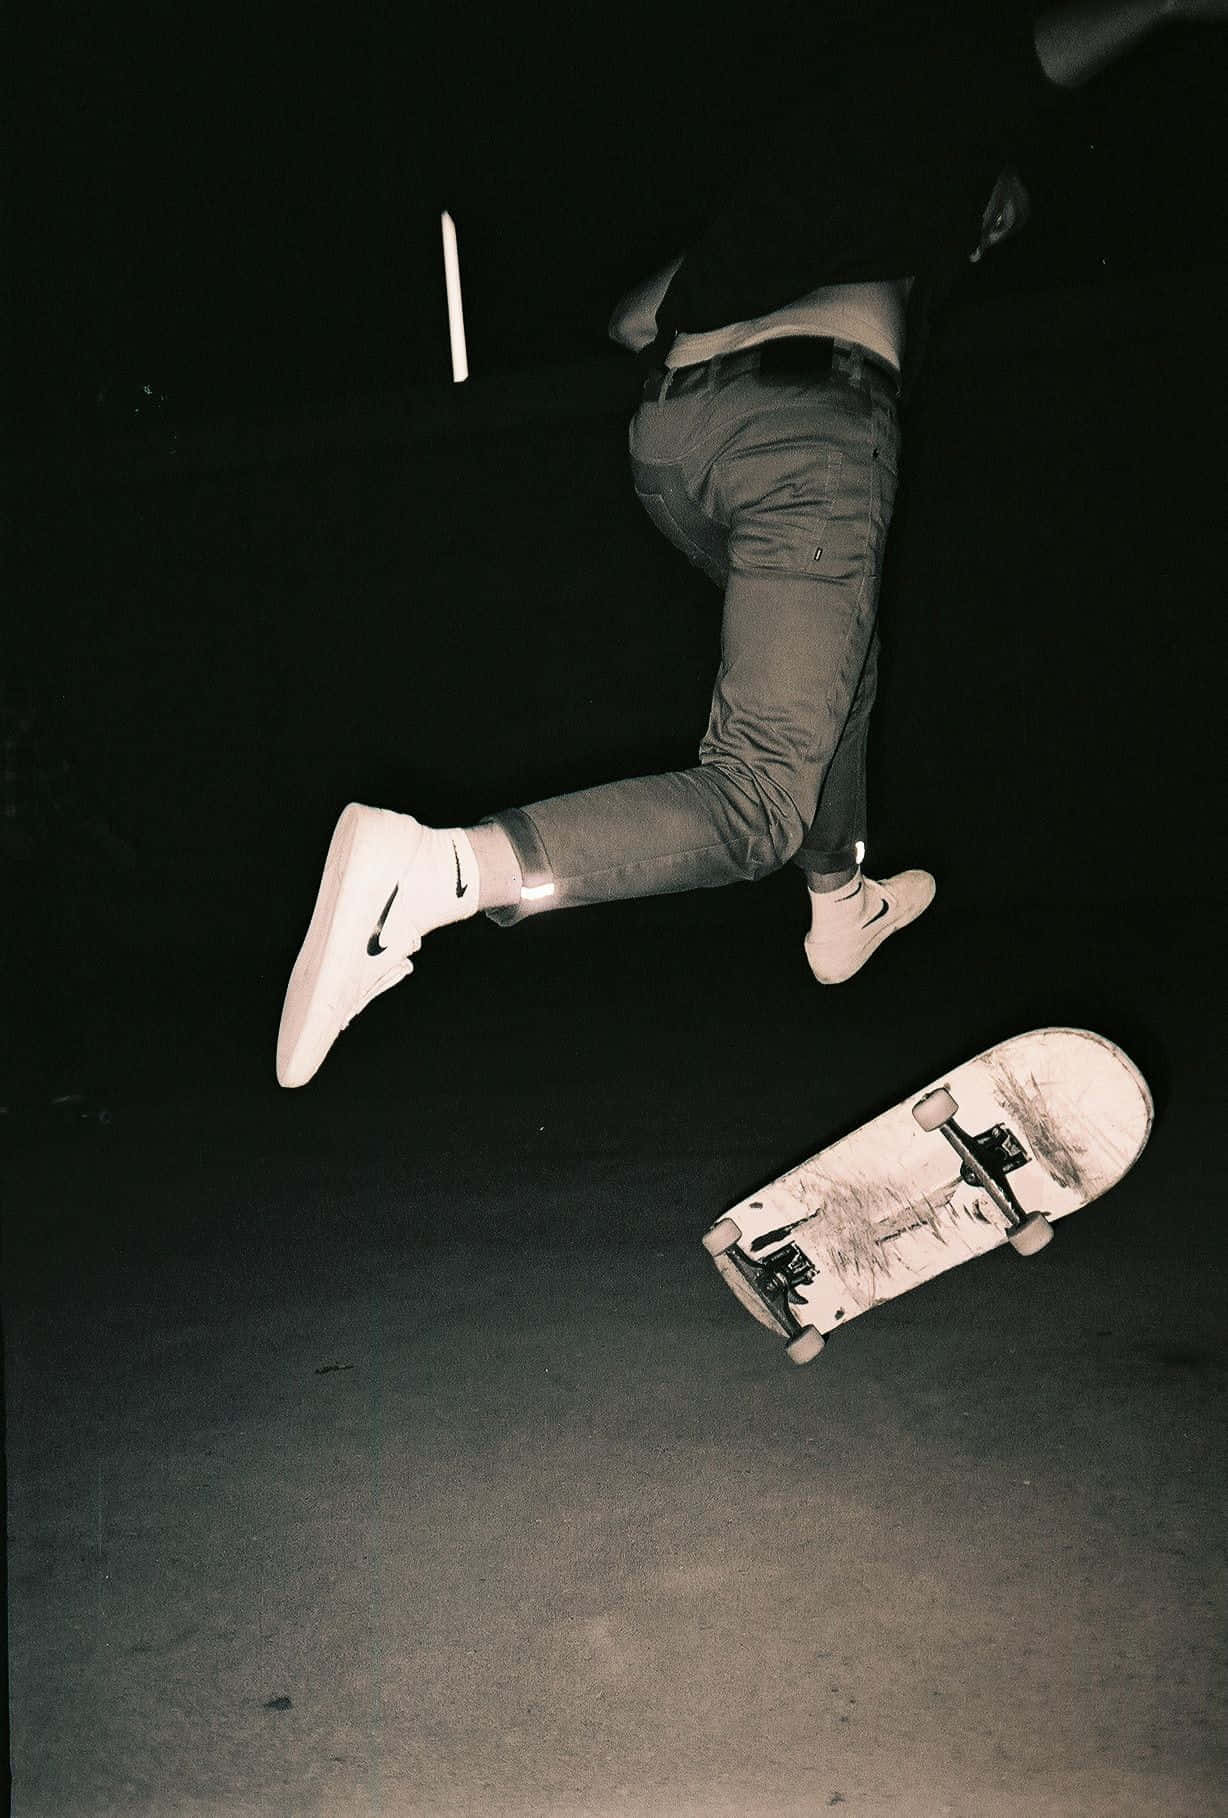 En mand udfører et trick på skateboard. Wallpaper